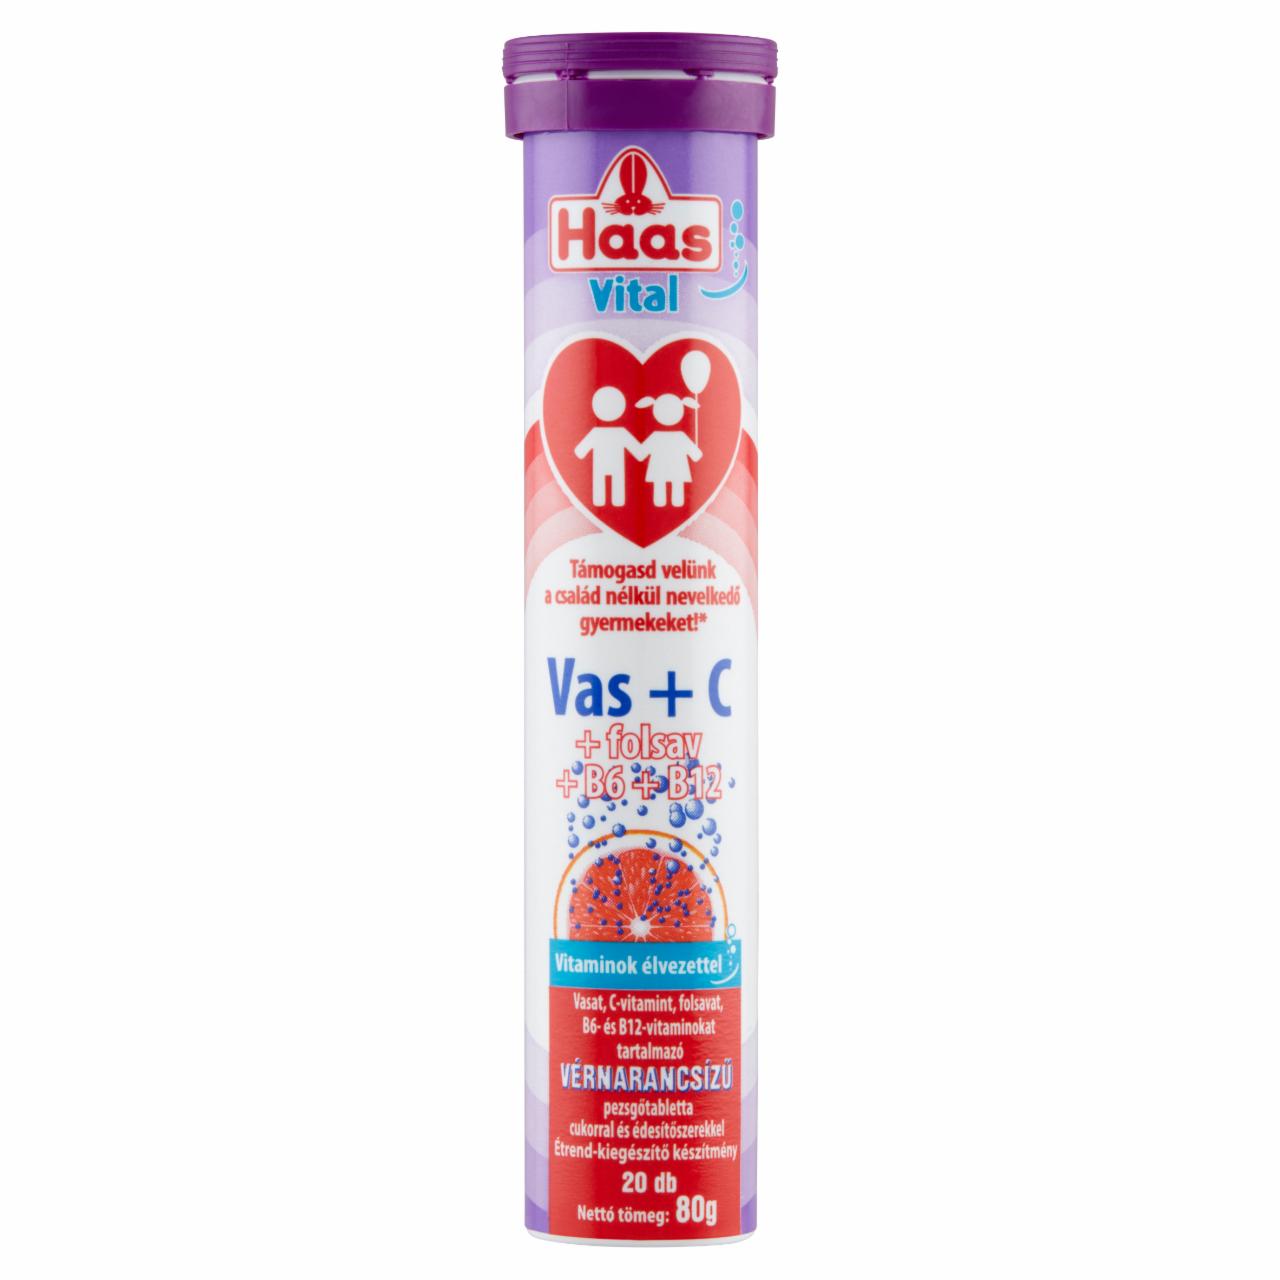 Képek - Haas Vital Vas+C+folsav+B6+B12 vérnarancsízű pezsgőtabletta cukorral és édesítőszerekkel 20 db 80 g